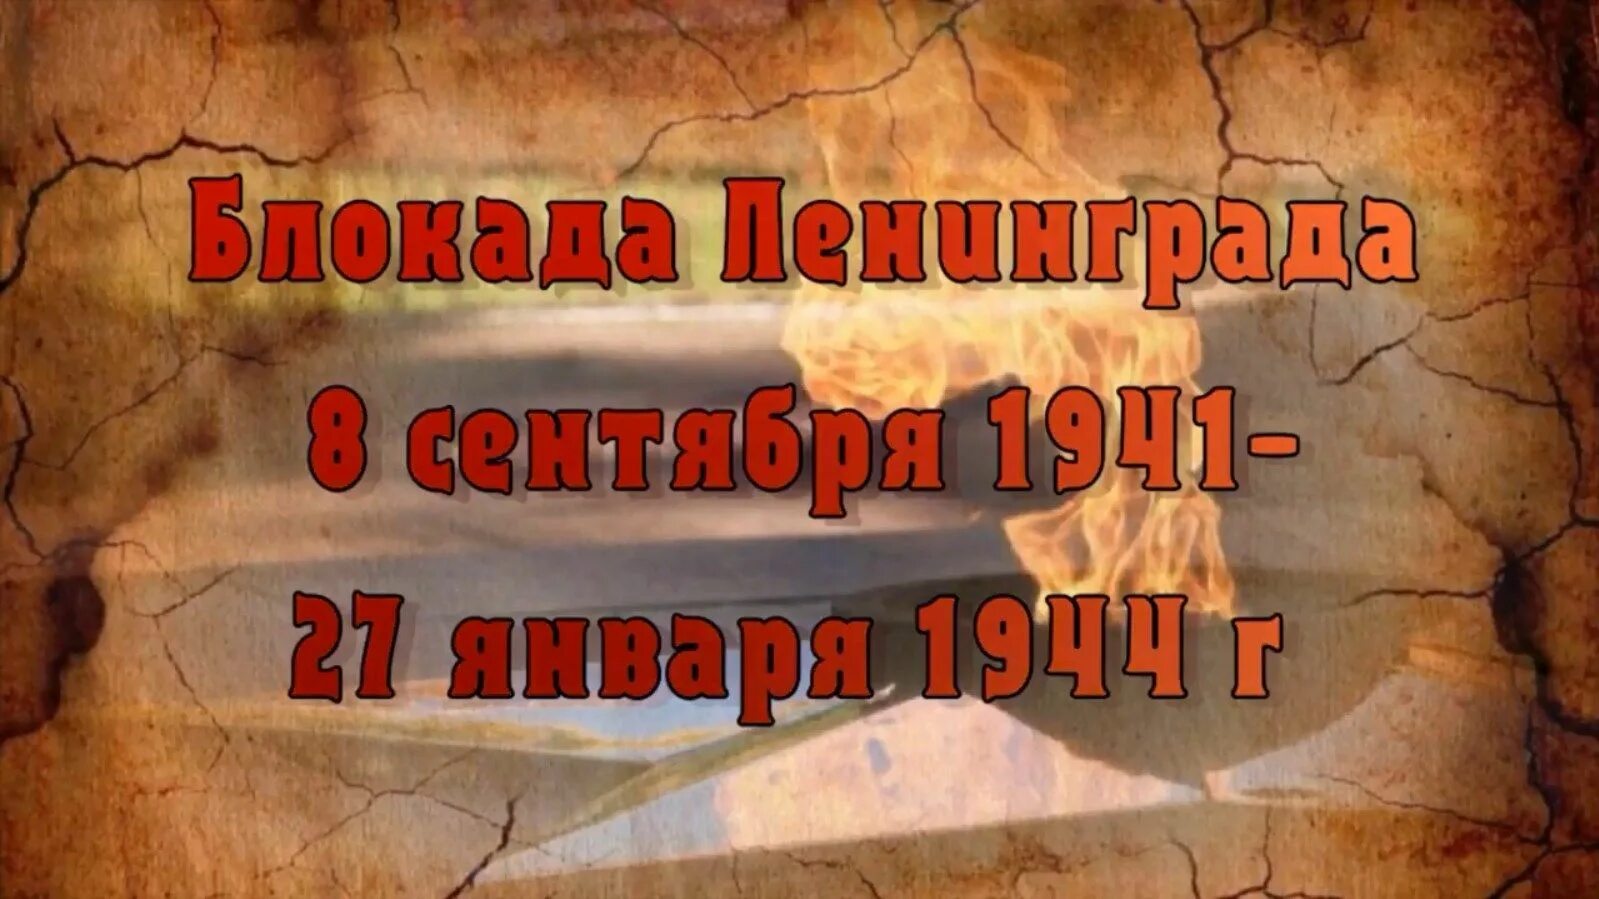 Начались год назад. День памяти жертв блокады Ленинграда. 8 Сентября 1941. 8 Сентября день памяти жертв блокады. #Жить - сокровище времён блокады.